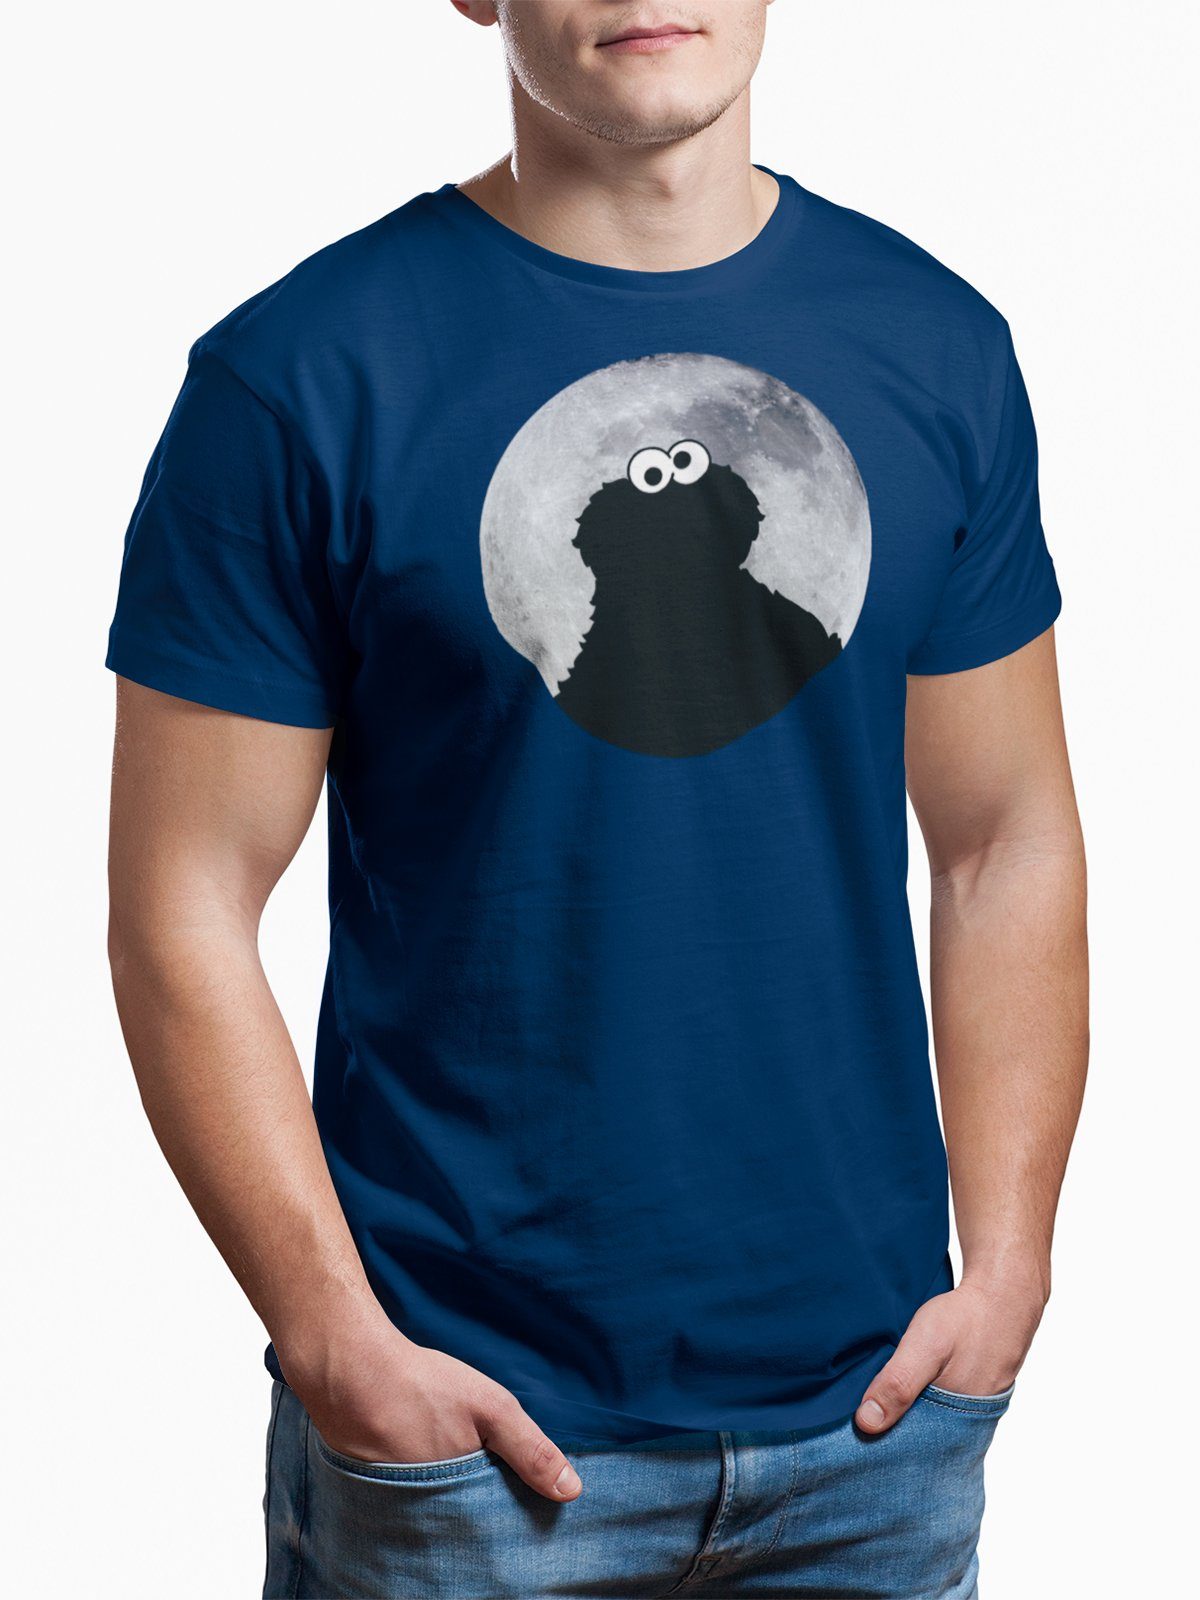 Sesamstrasse T-Shirt Cookie Monster Moonnight navy